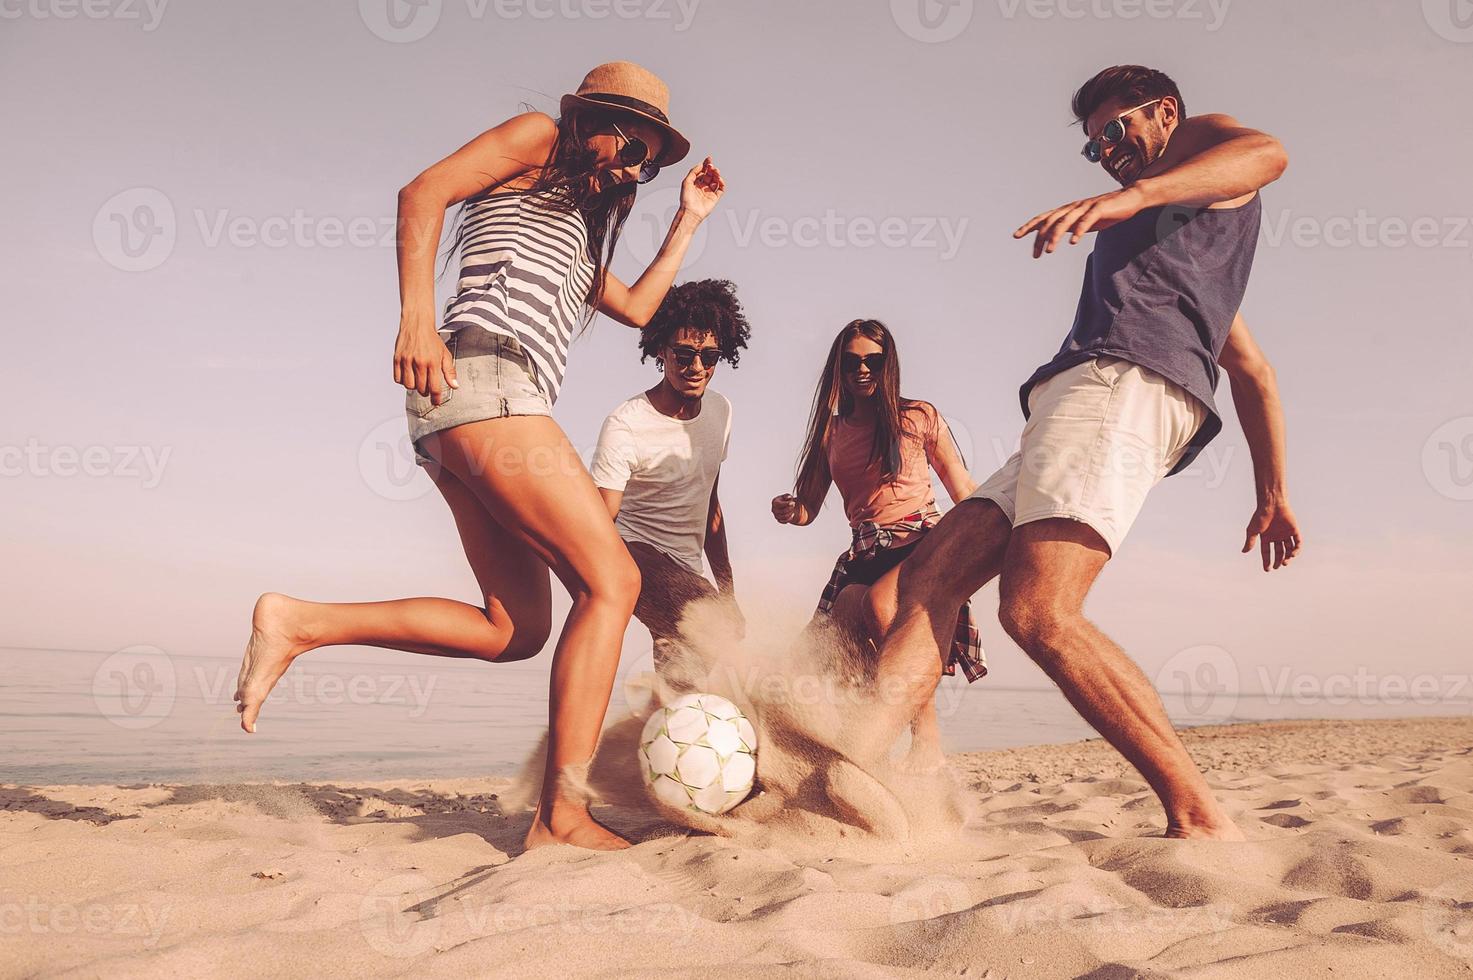 momentos divertidos com os amigos. grupo de jovens alegres brincando com bola de futebol na praia foto